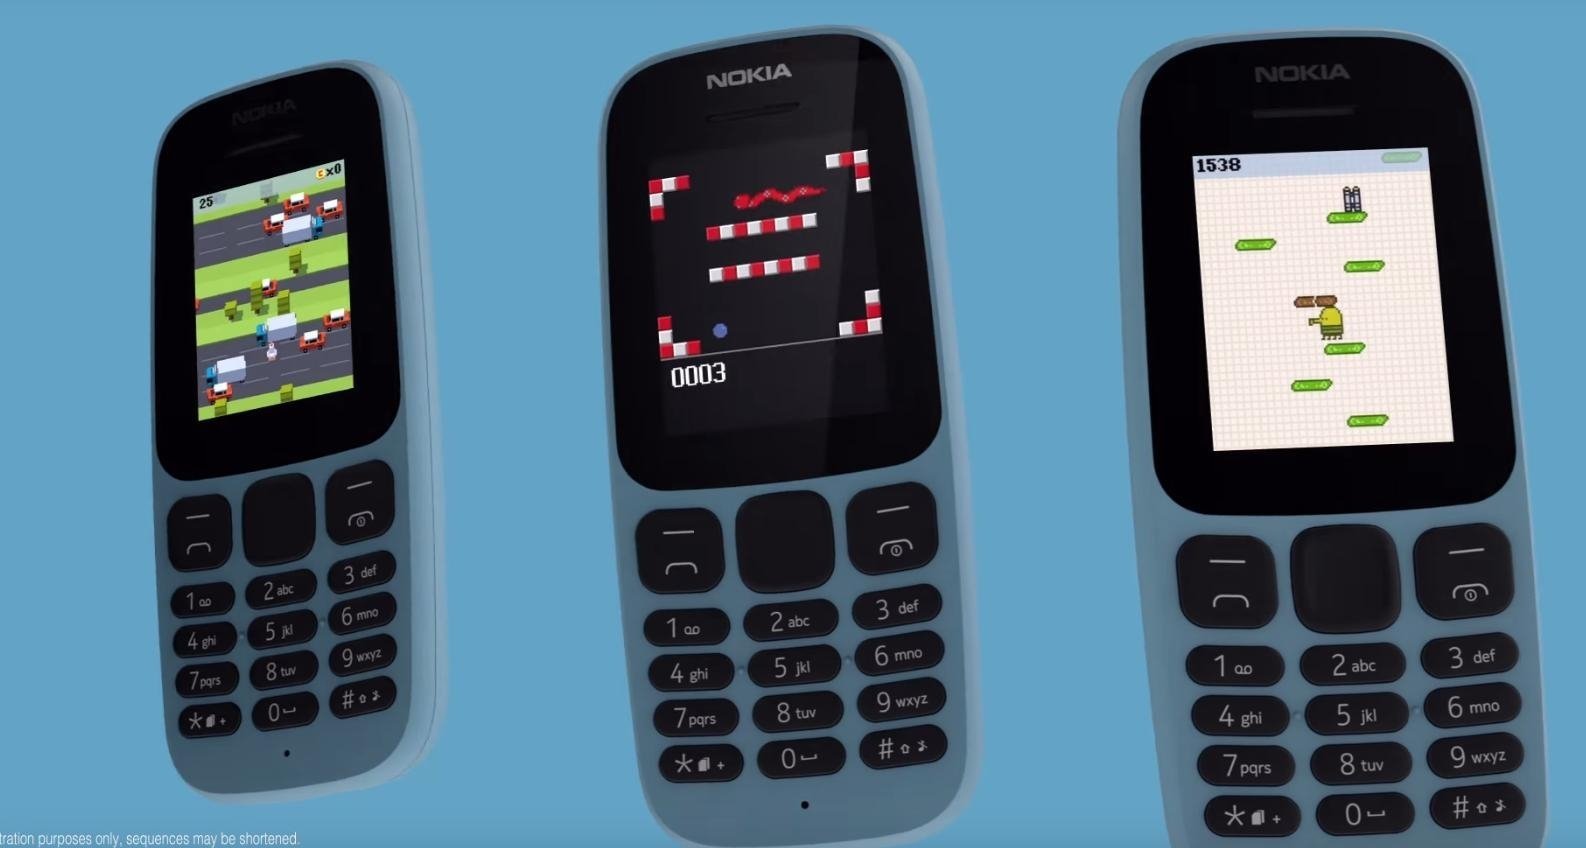 Así es el nuevo Nokia 105, más pantalla y diseño renovado